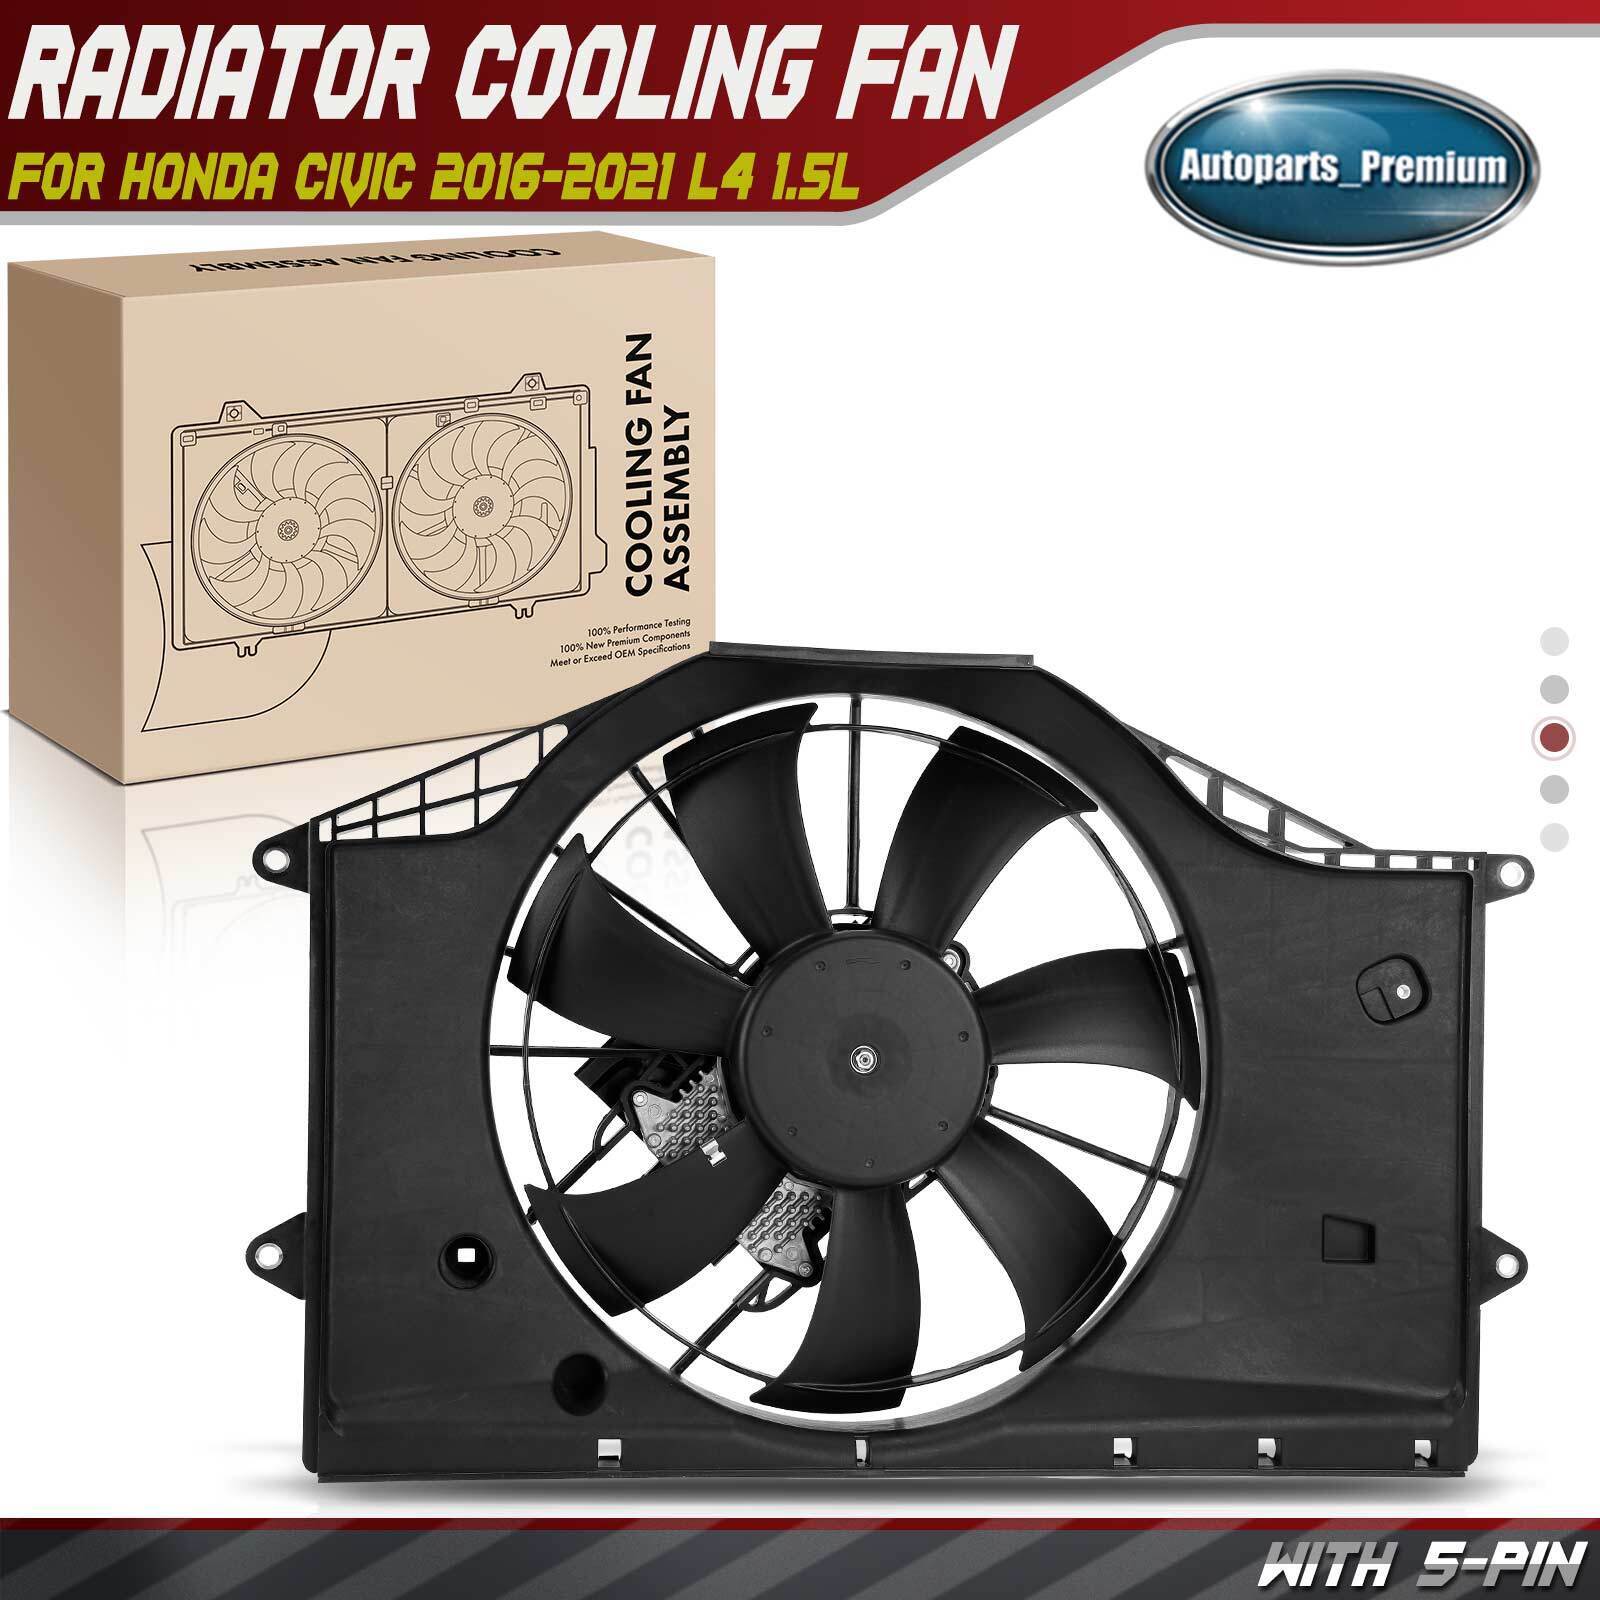 Radiator Cooling Fan Assembly for Honda Civic 2016-2021 1.5L w/ Brushless Motor